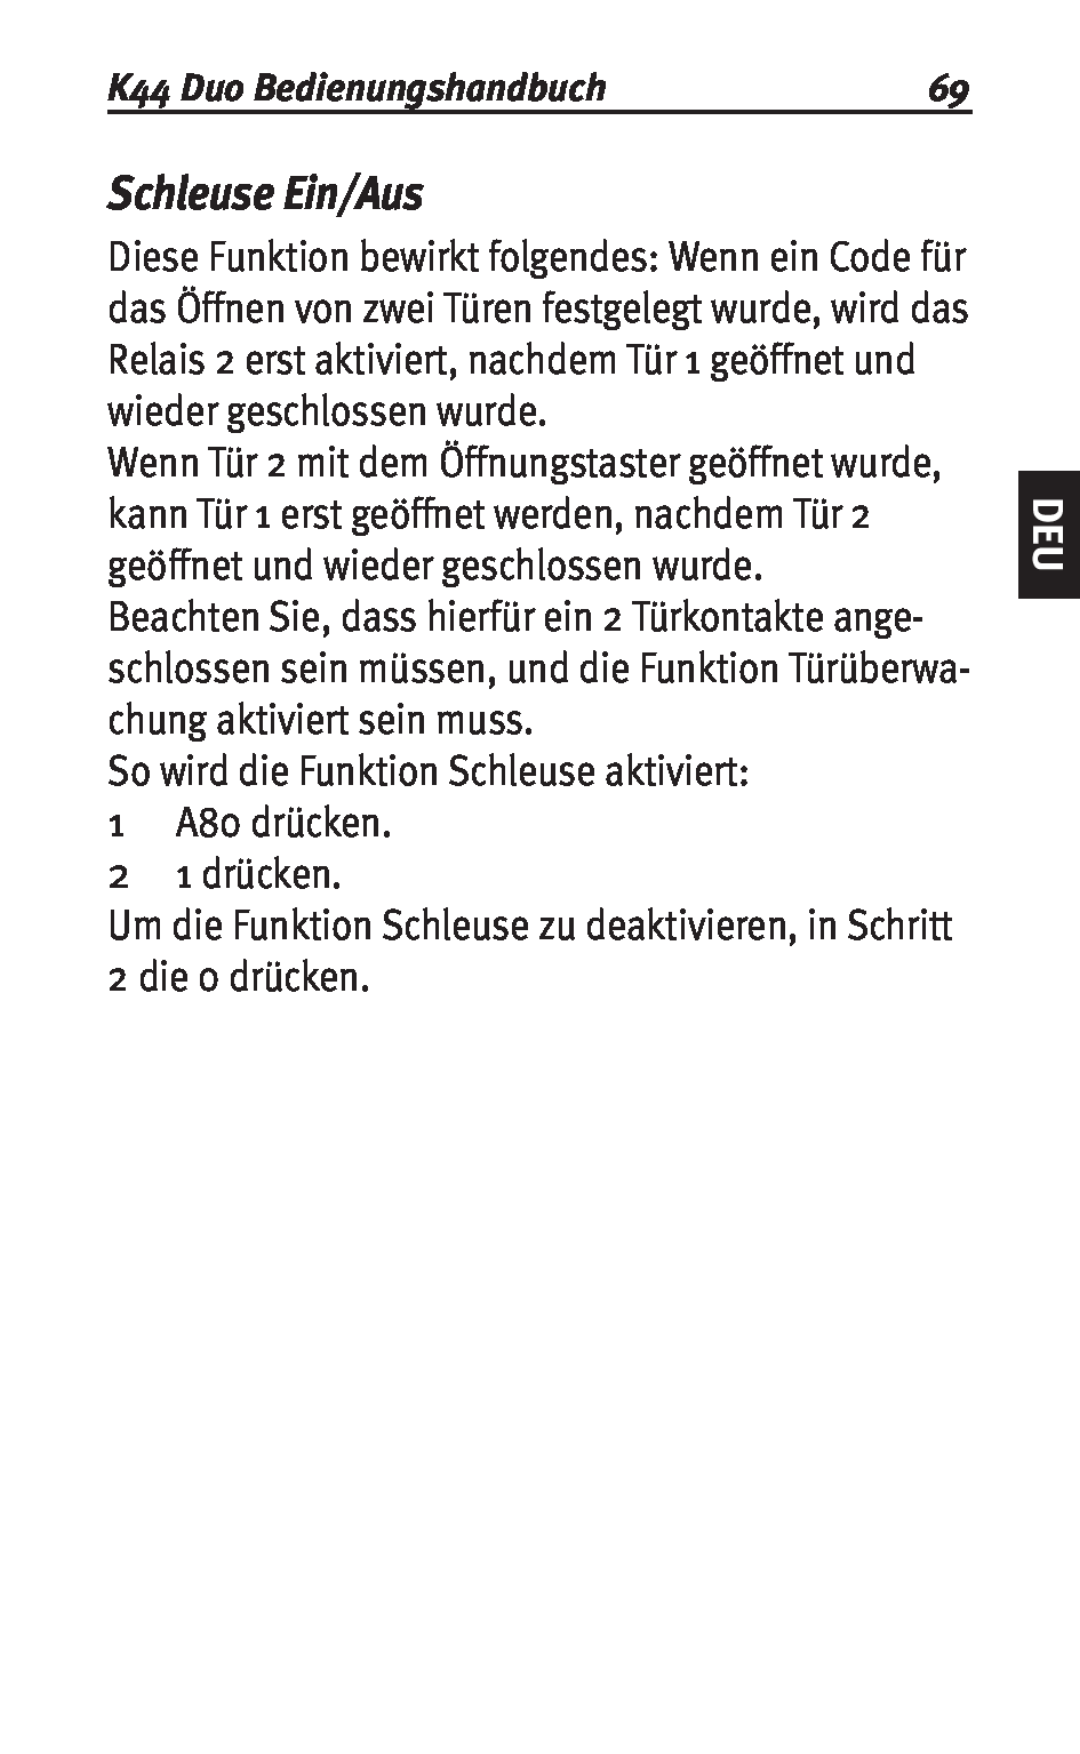 Siemens K44 user manual Schleuse Ein/Aus, So wird die Funktion Schleuse aktiviert, 1 A80 drücken 2 1 drücken 